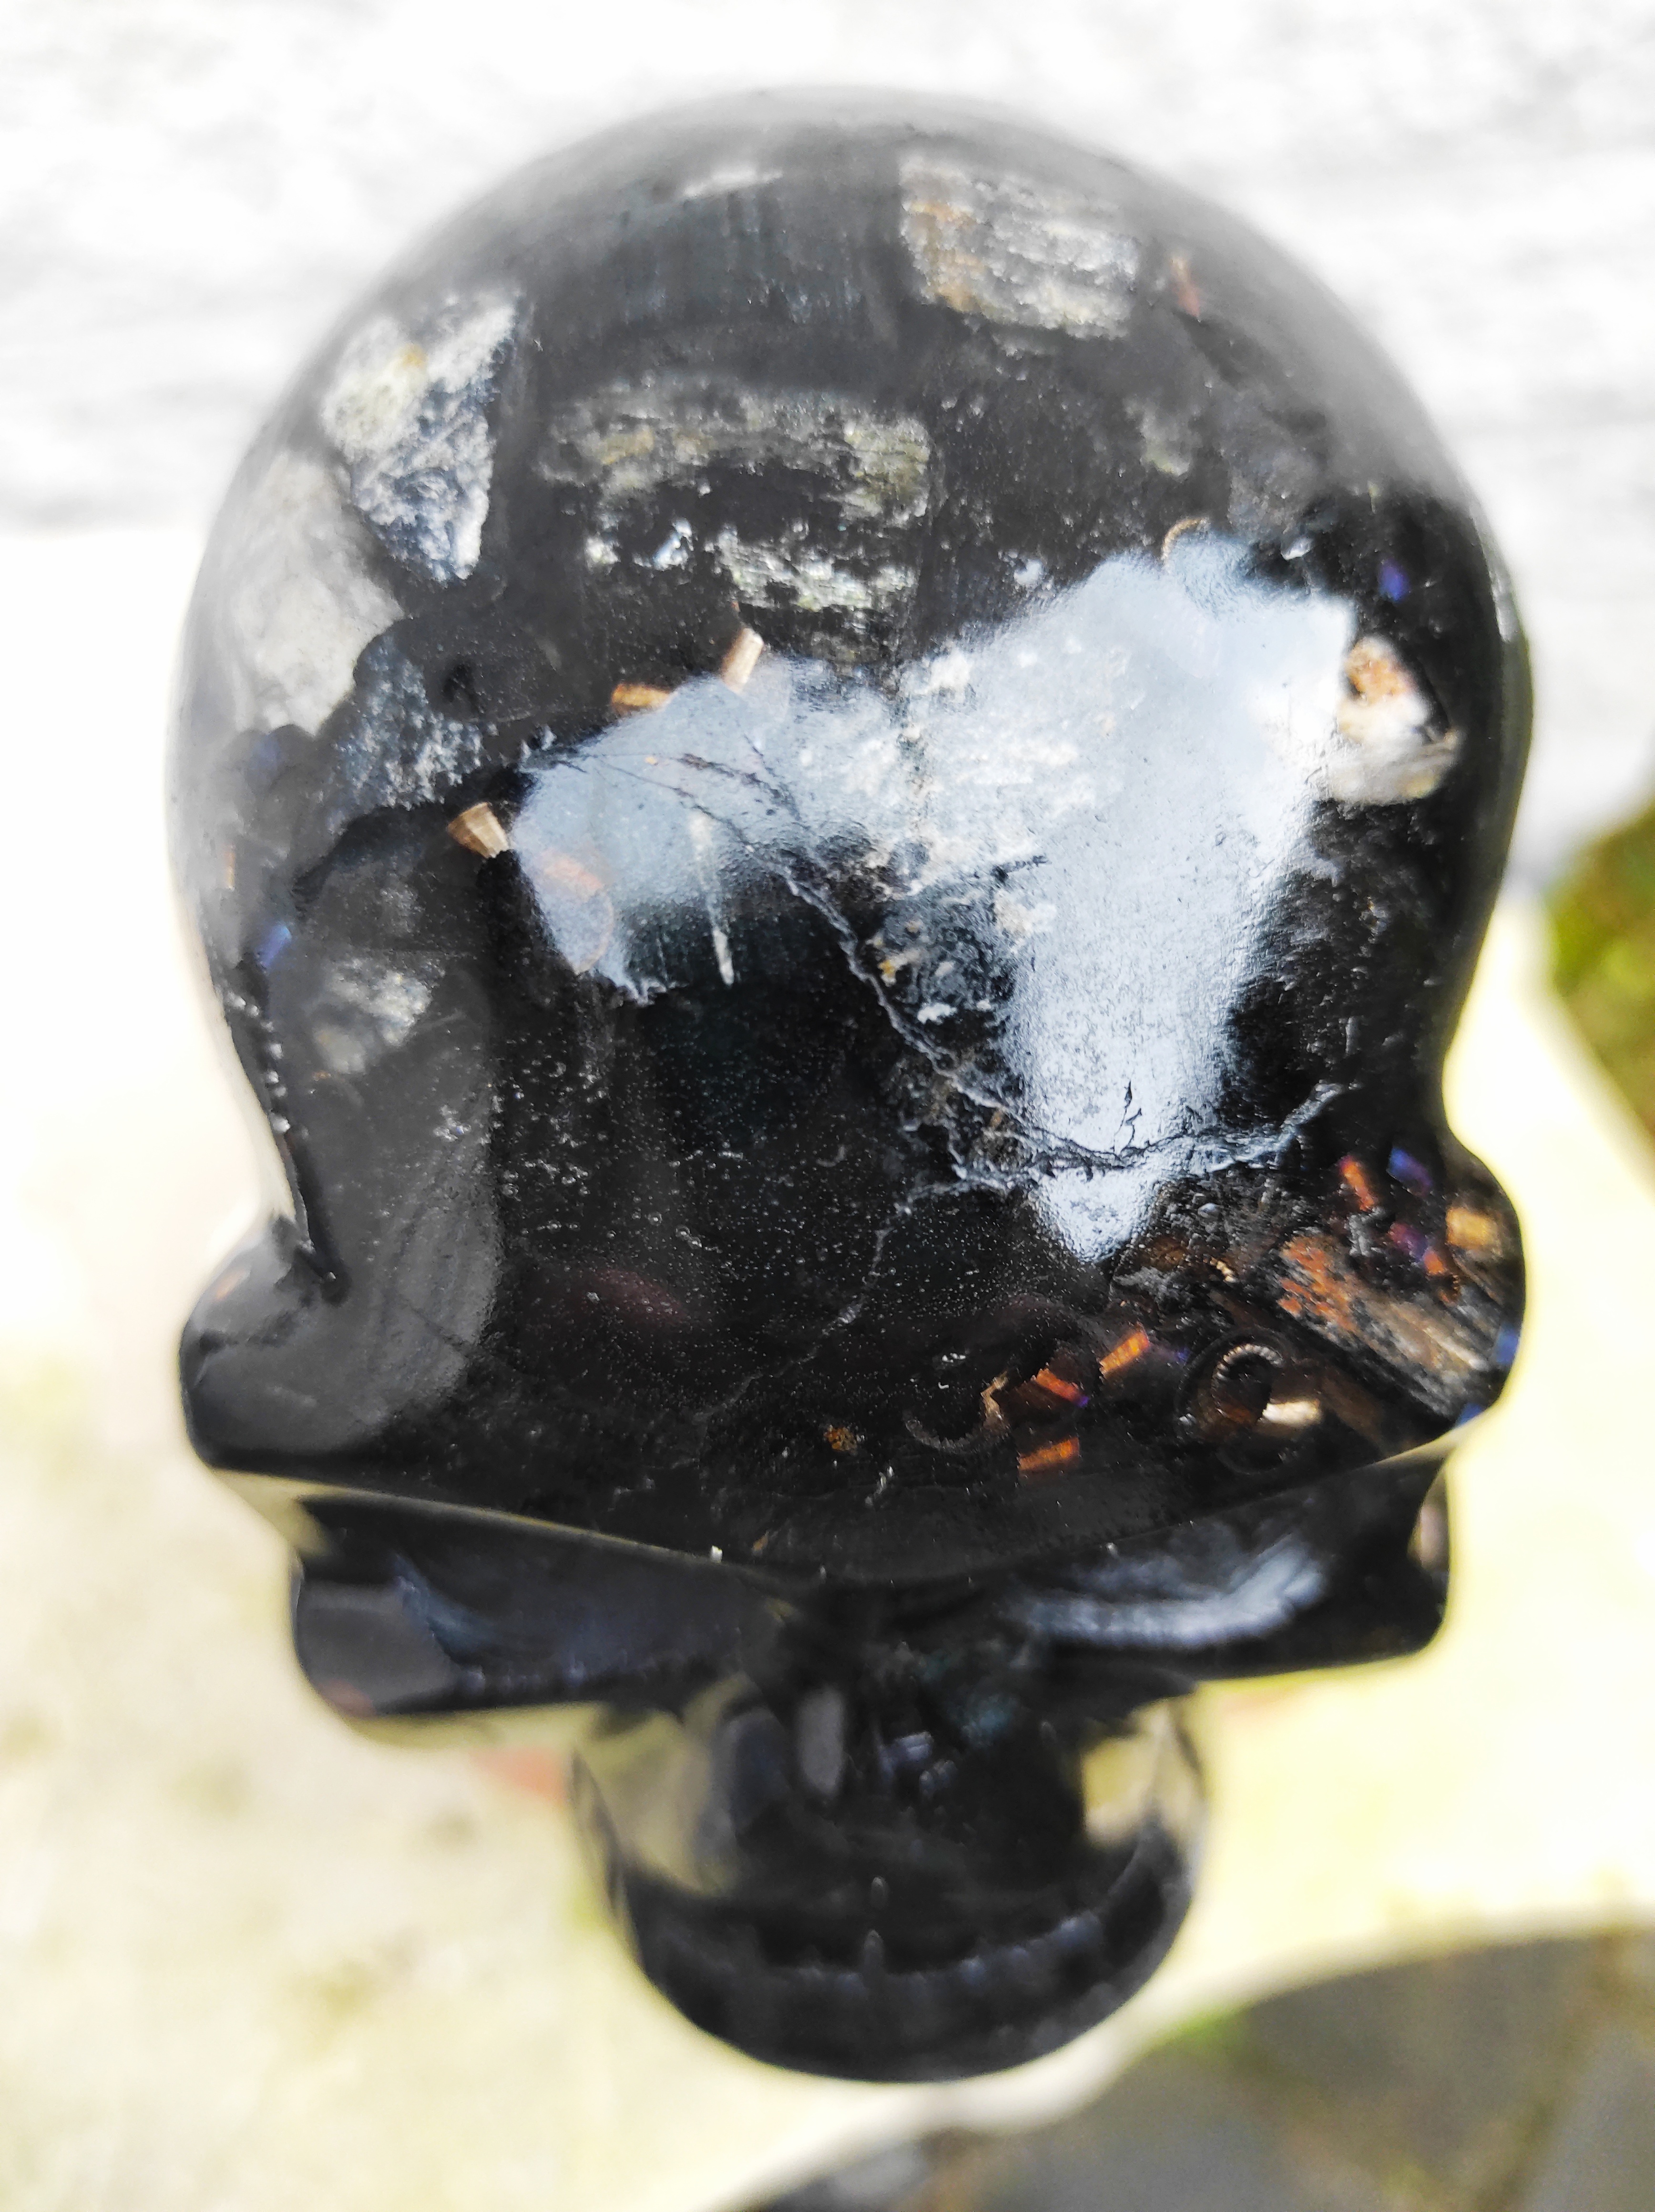 Orgonite Skull gevuld met Toermalijn en Shungit en ijzerkrullen.